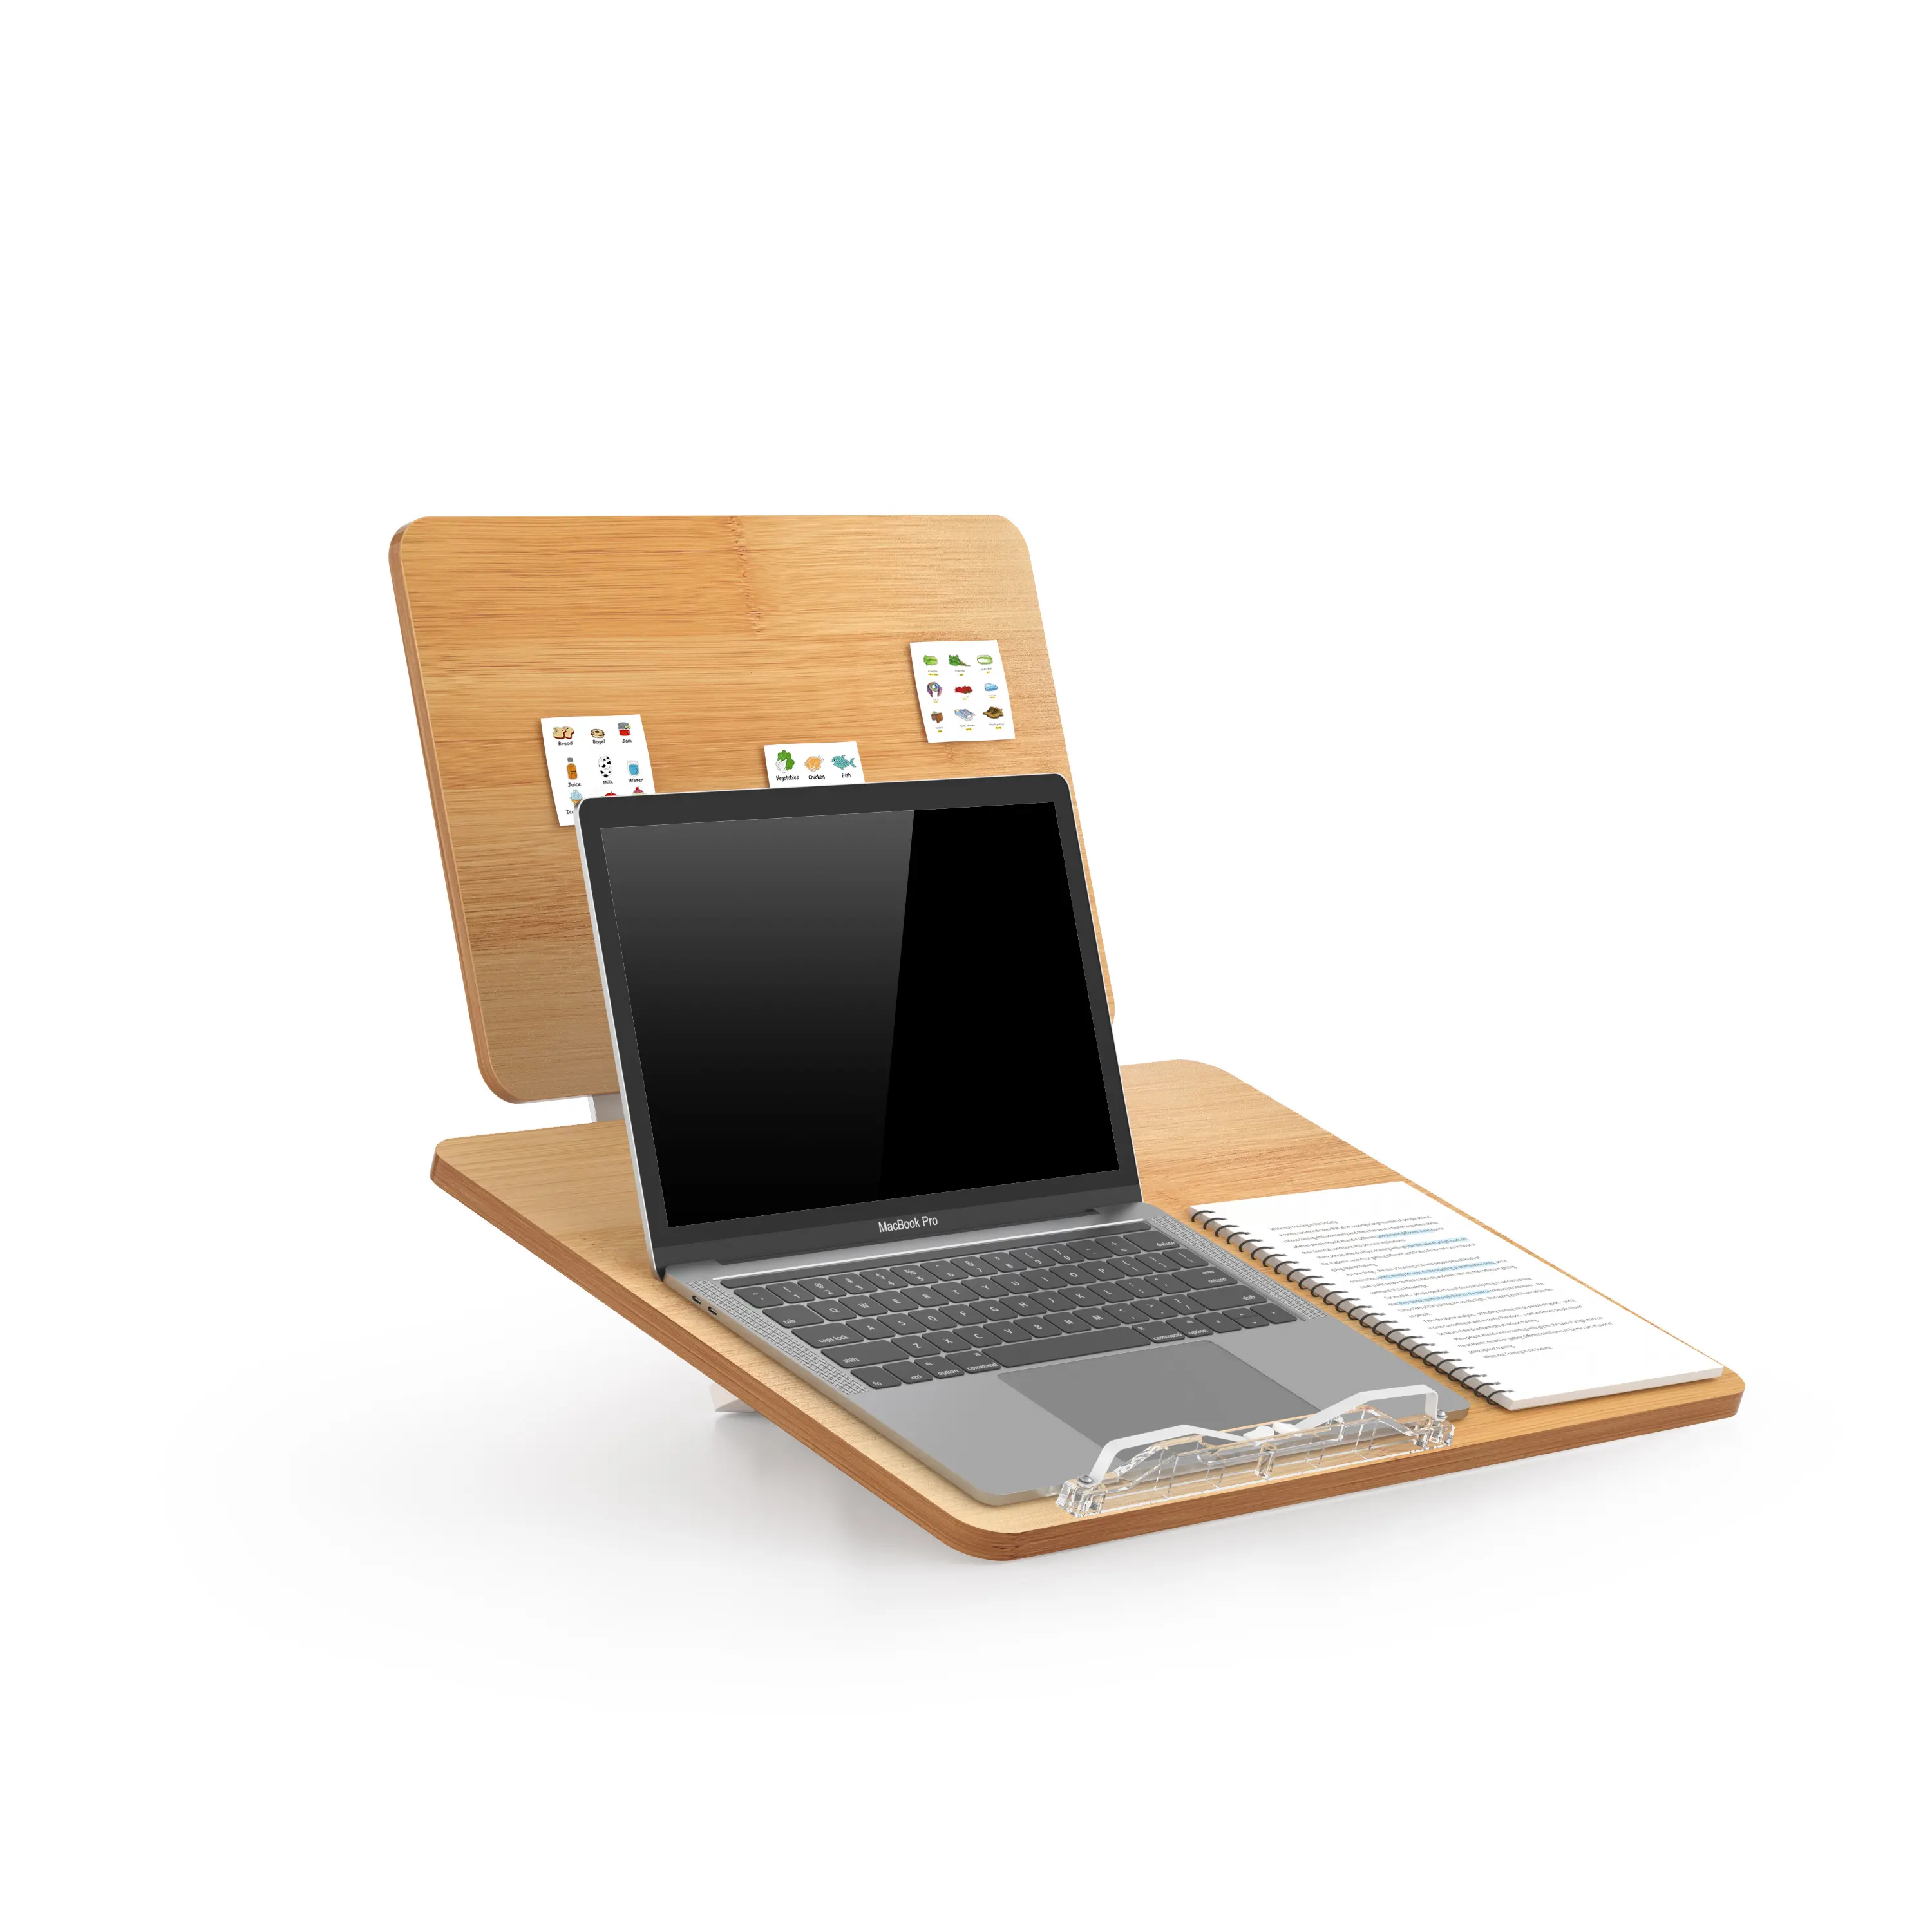 फ़ाइल के साथ डबल लेयर बुक होल्डर हैंड्स फ्री, रेसिपी, पाठ्यपुस्तक, समायोज्य बुक स्टैंड के लिए फोल्डेबल डेस्कटॉप राइजर